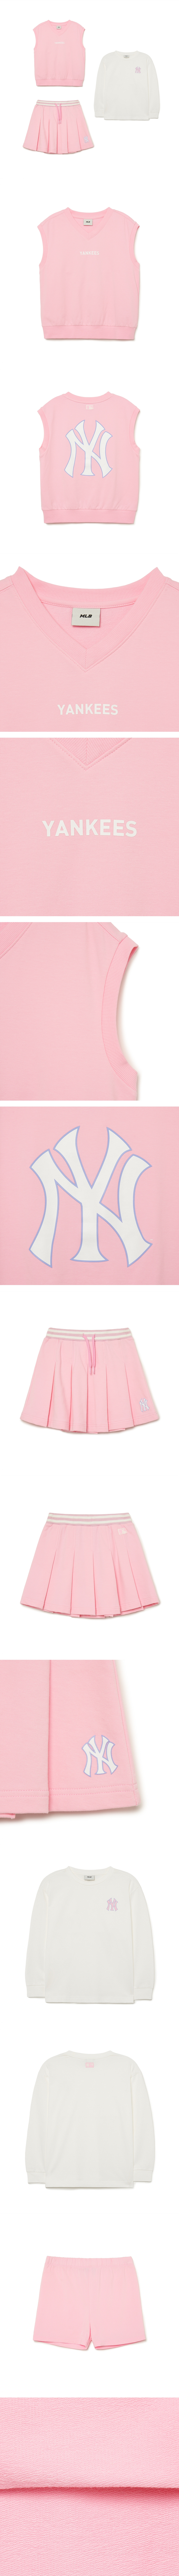 Kids] Basic Vest Girls 3 Set Up NEW YORK YANKEES - MLB Global